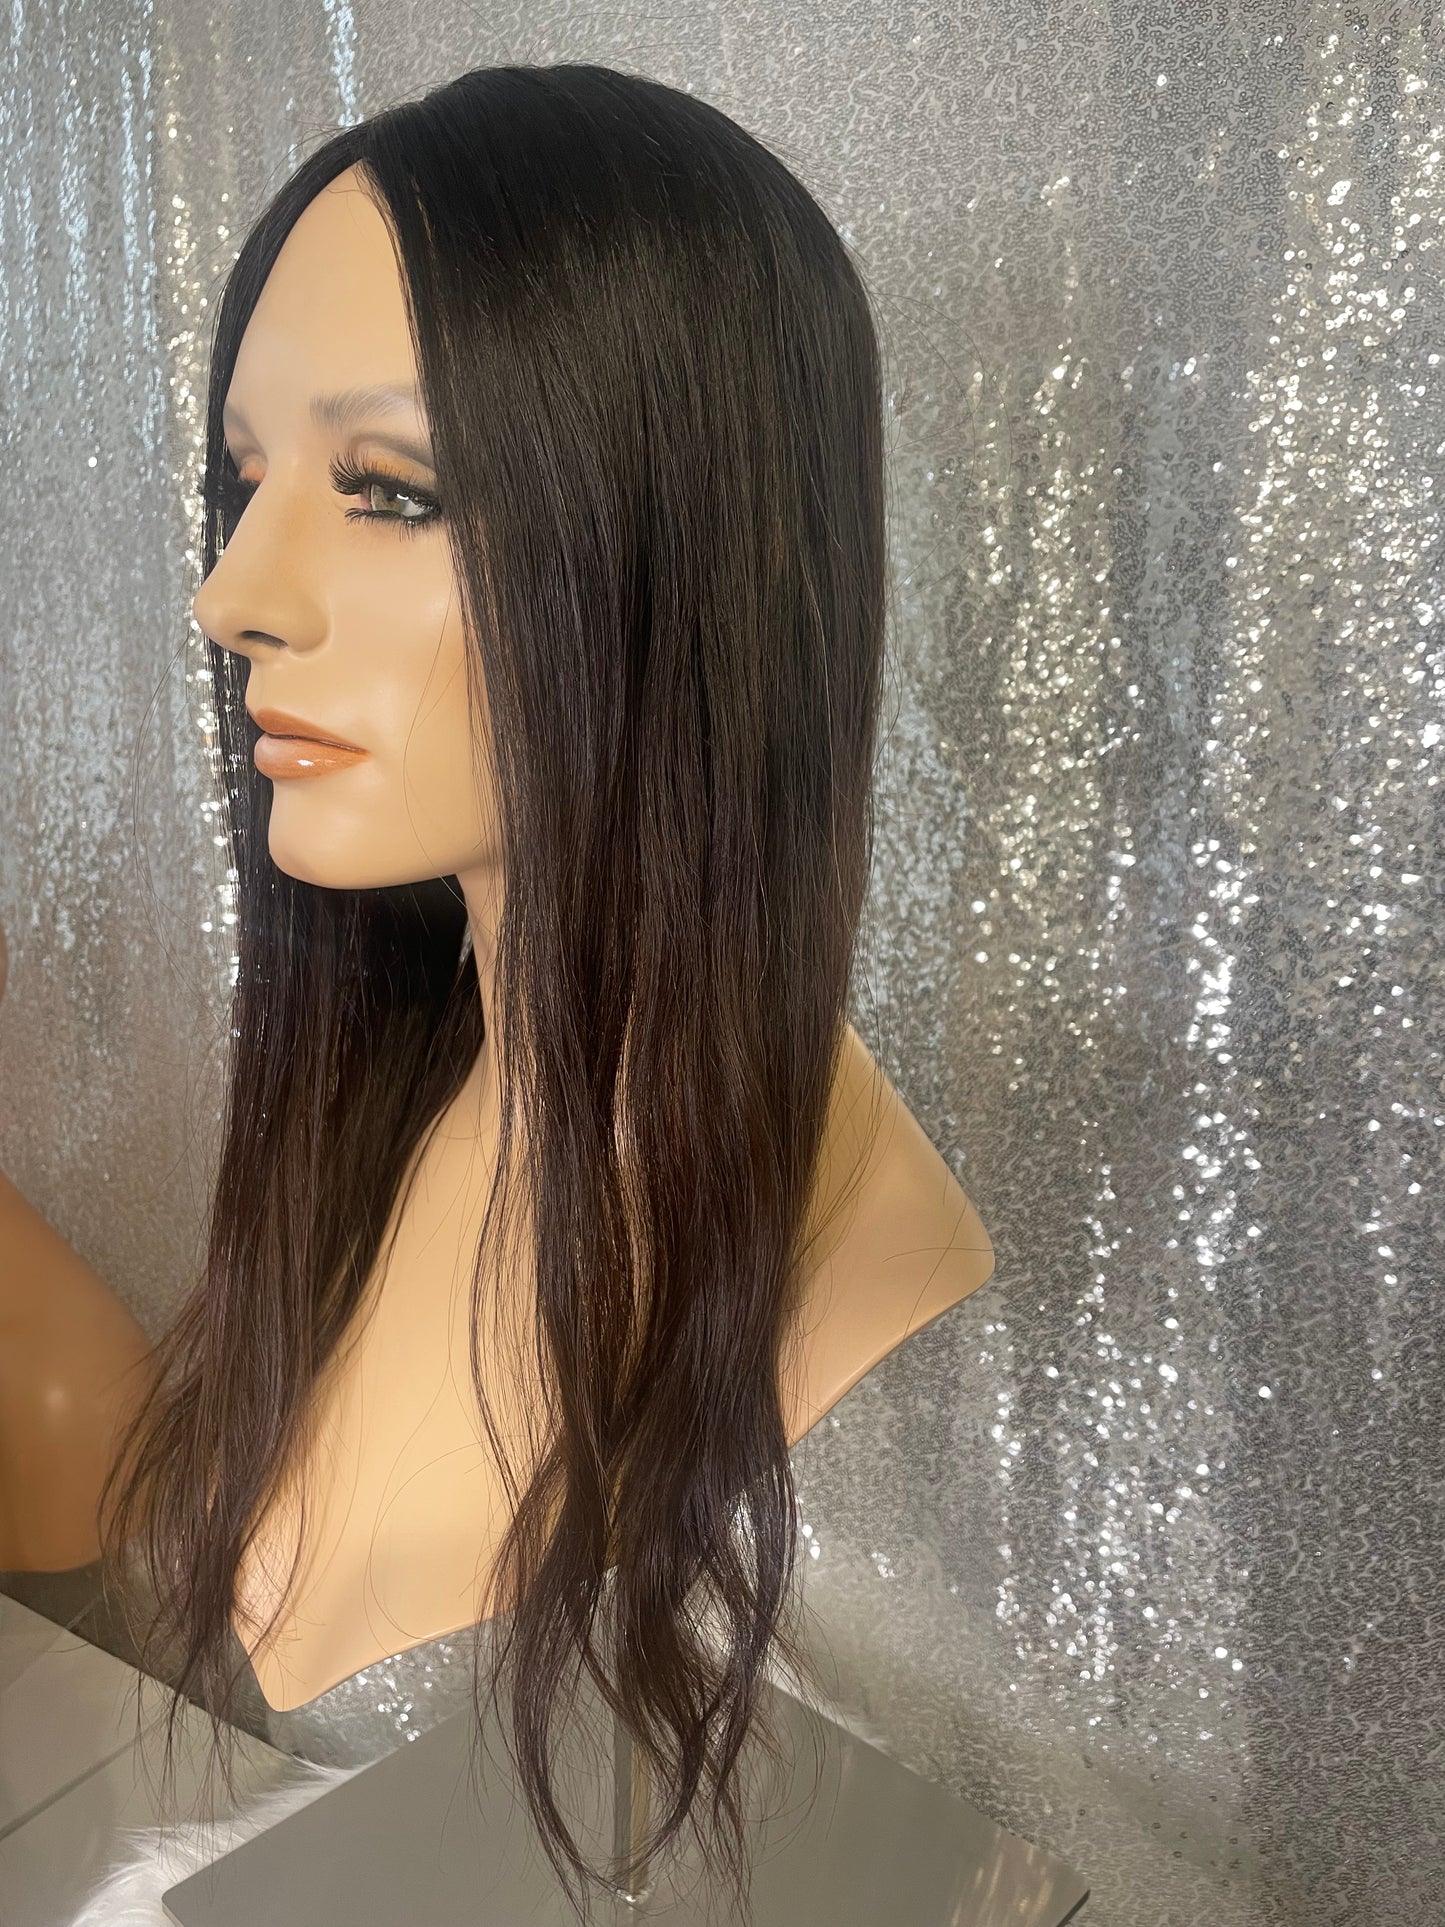 Topper Veronica - 6x6 inch / 130 % / 20 inch / european hair